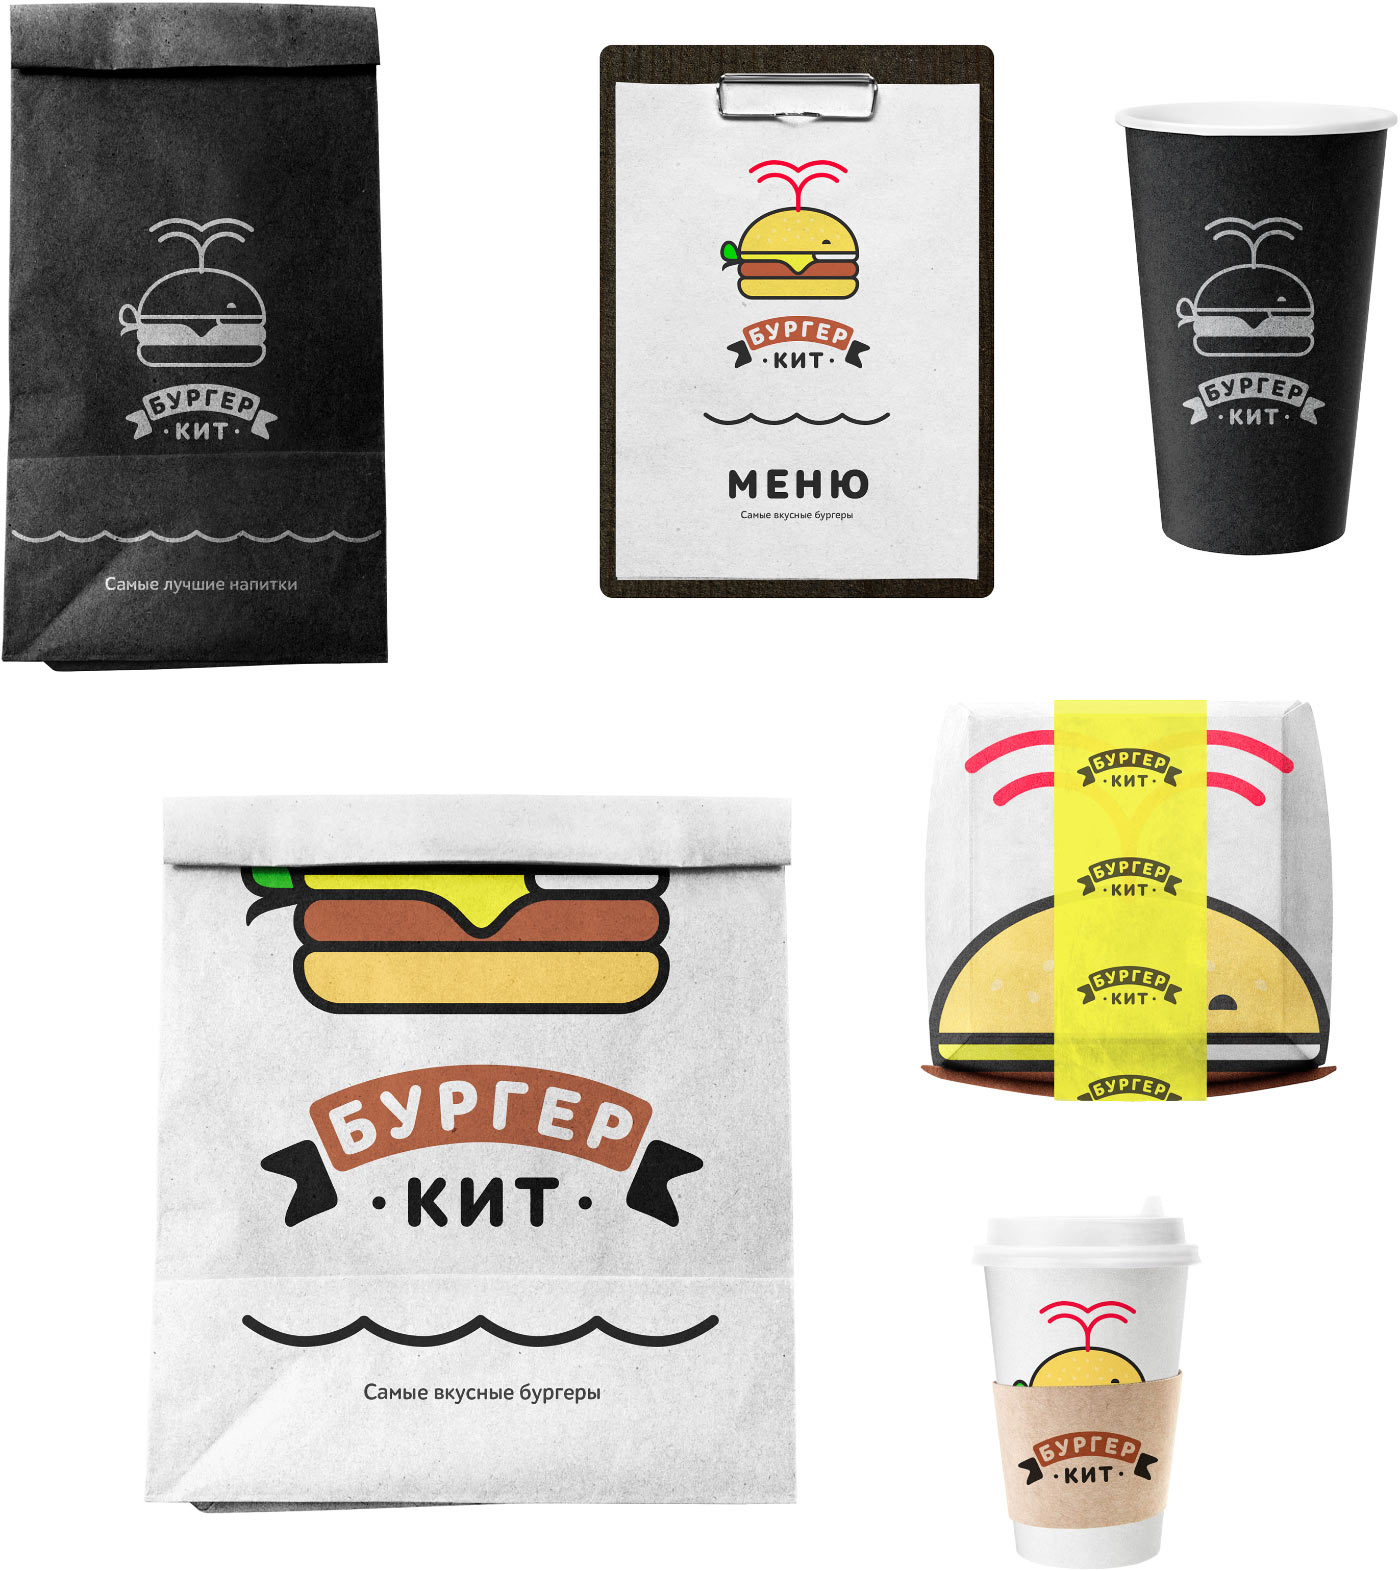 burger kit things